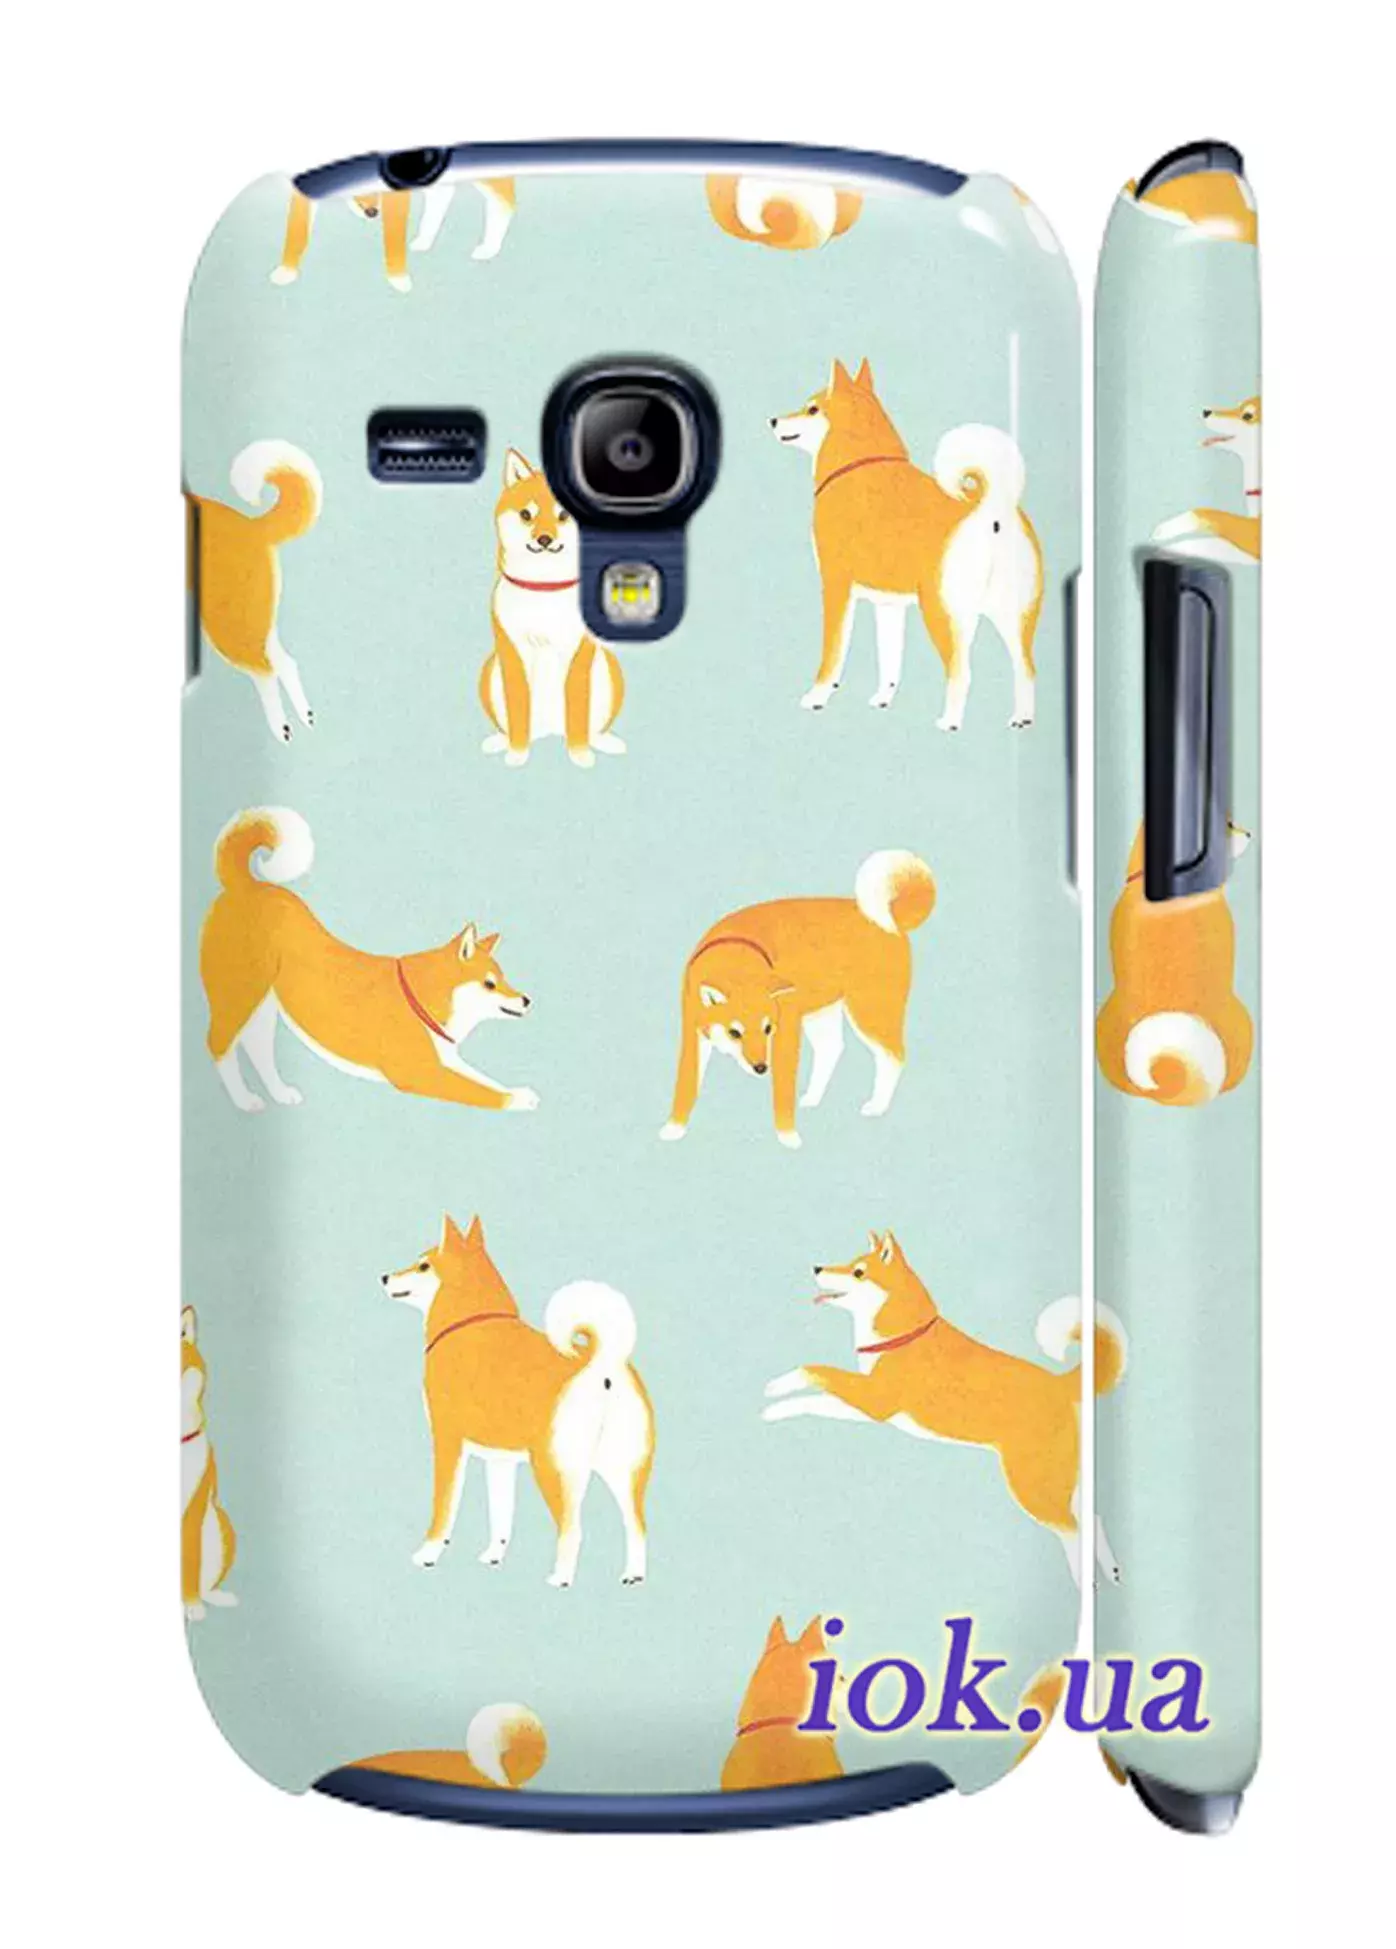 Чехол для Galaxy S3 Mini - Забавный пёс